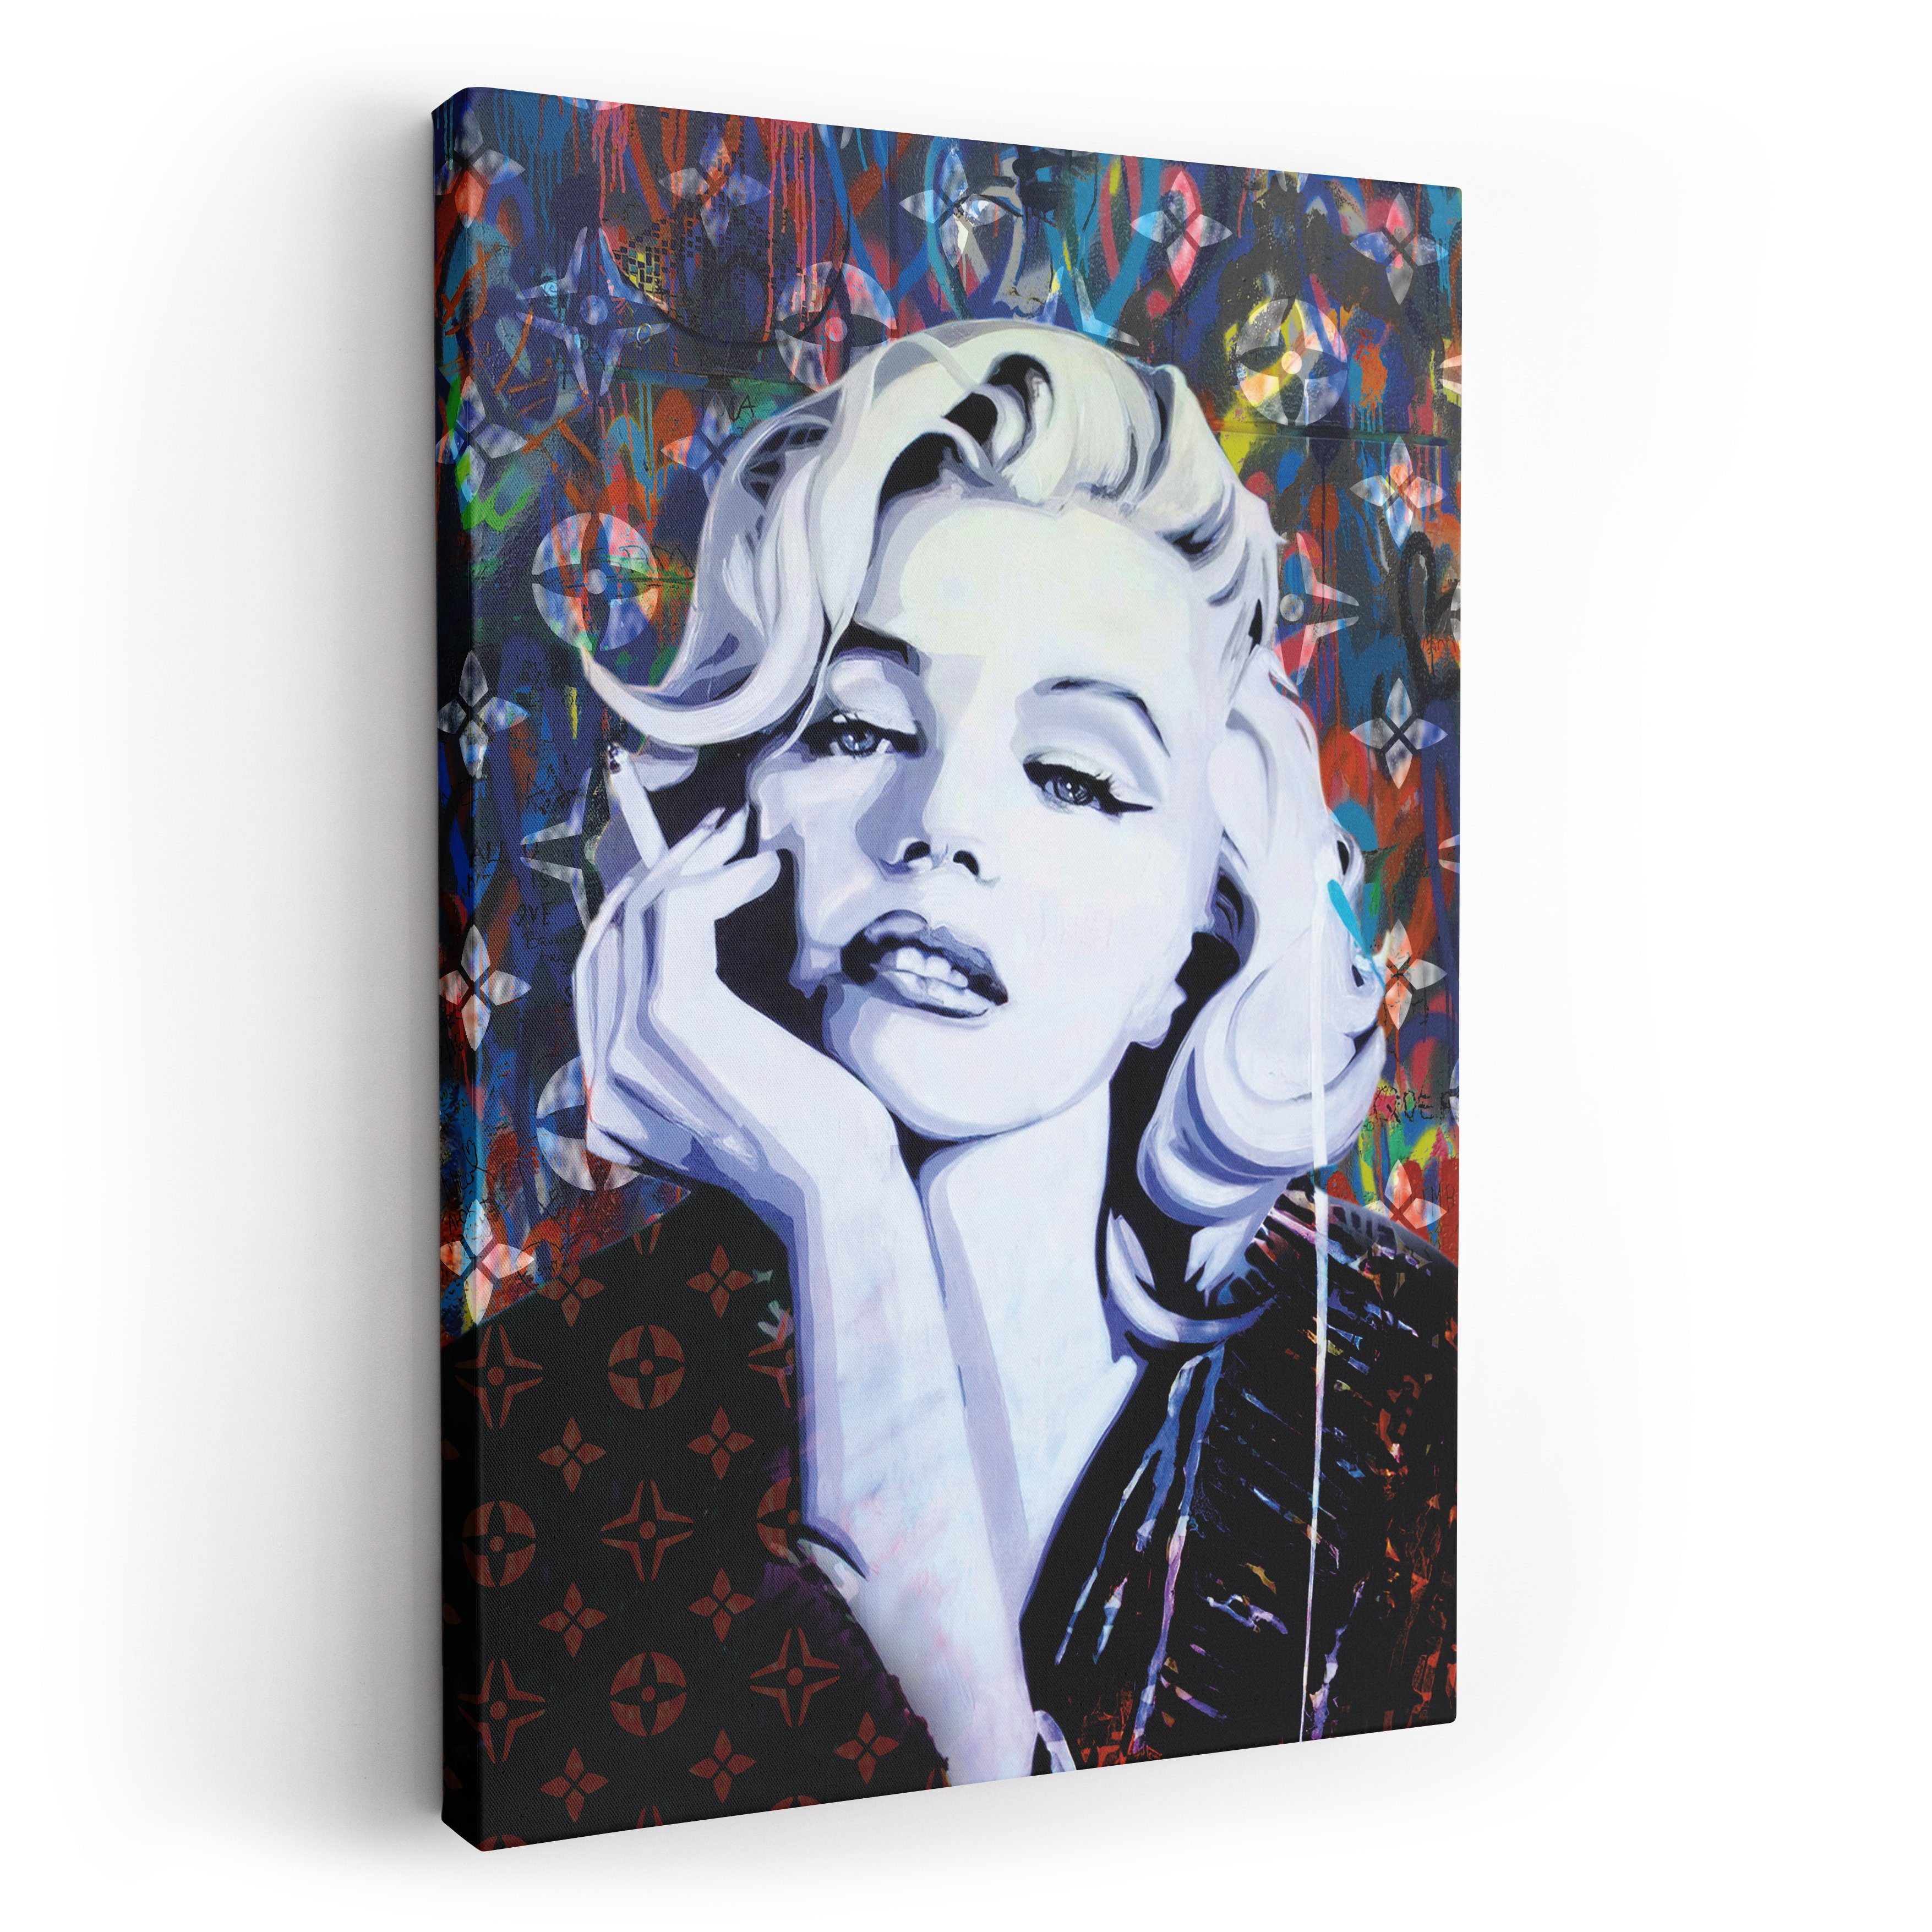 ArtMind Wandbild Marilyn Monroe, Premium Wandbilder als Poster & gerahmte Leinwand in 4 Größen, Wall Art, Bild, Canva